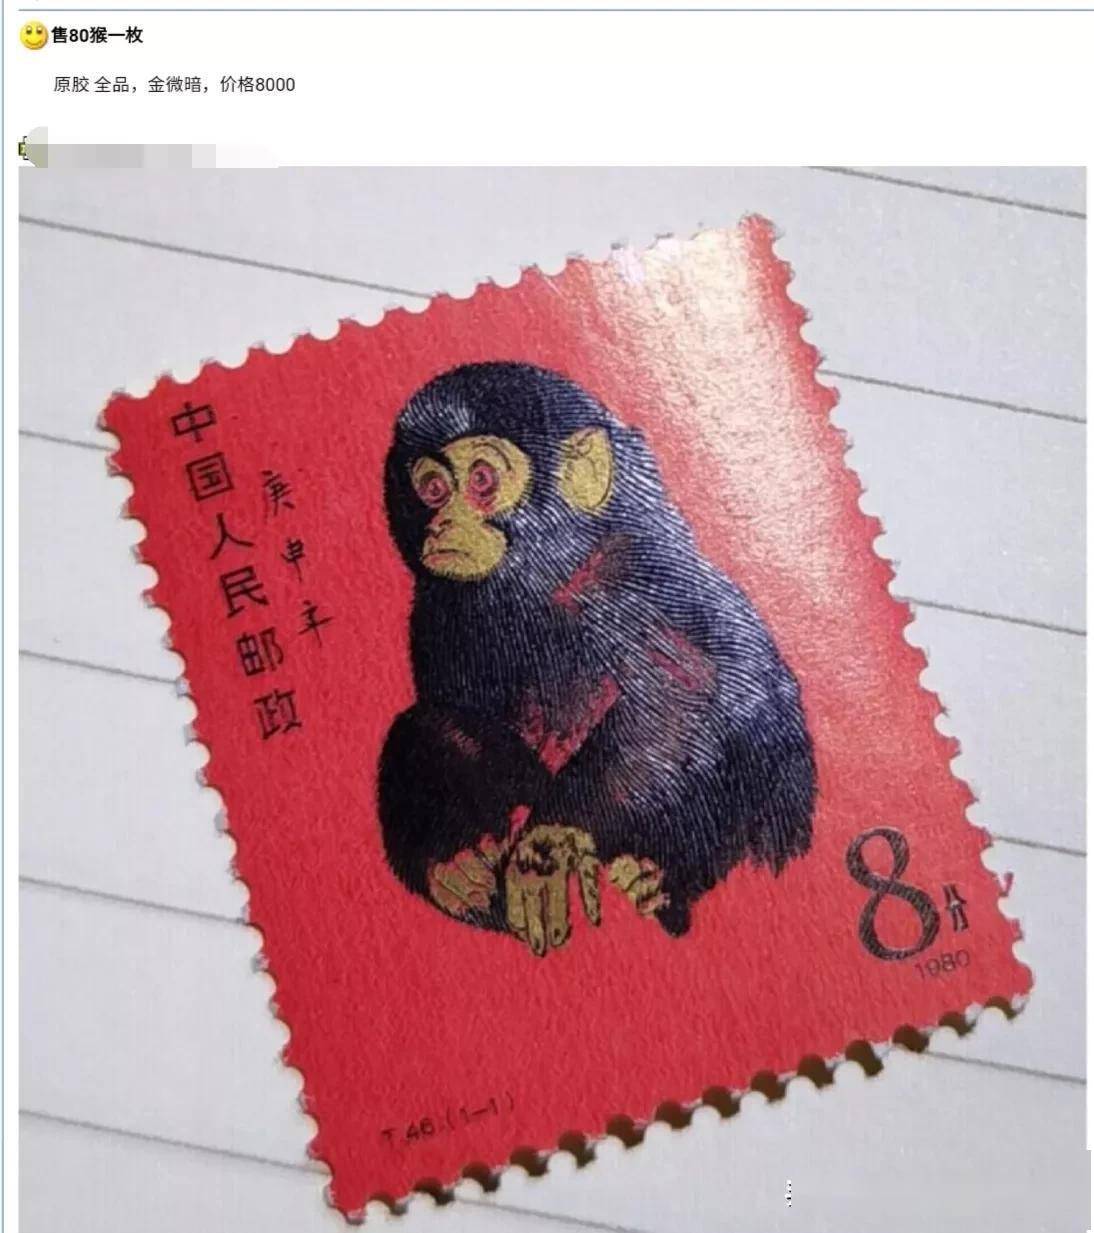 价值十万元以上邮票图片